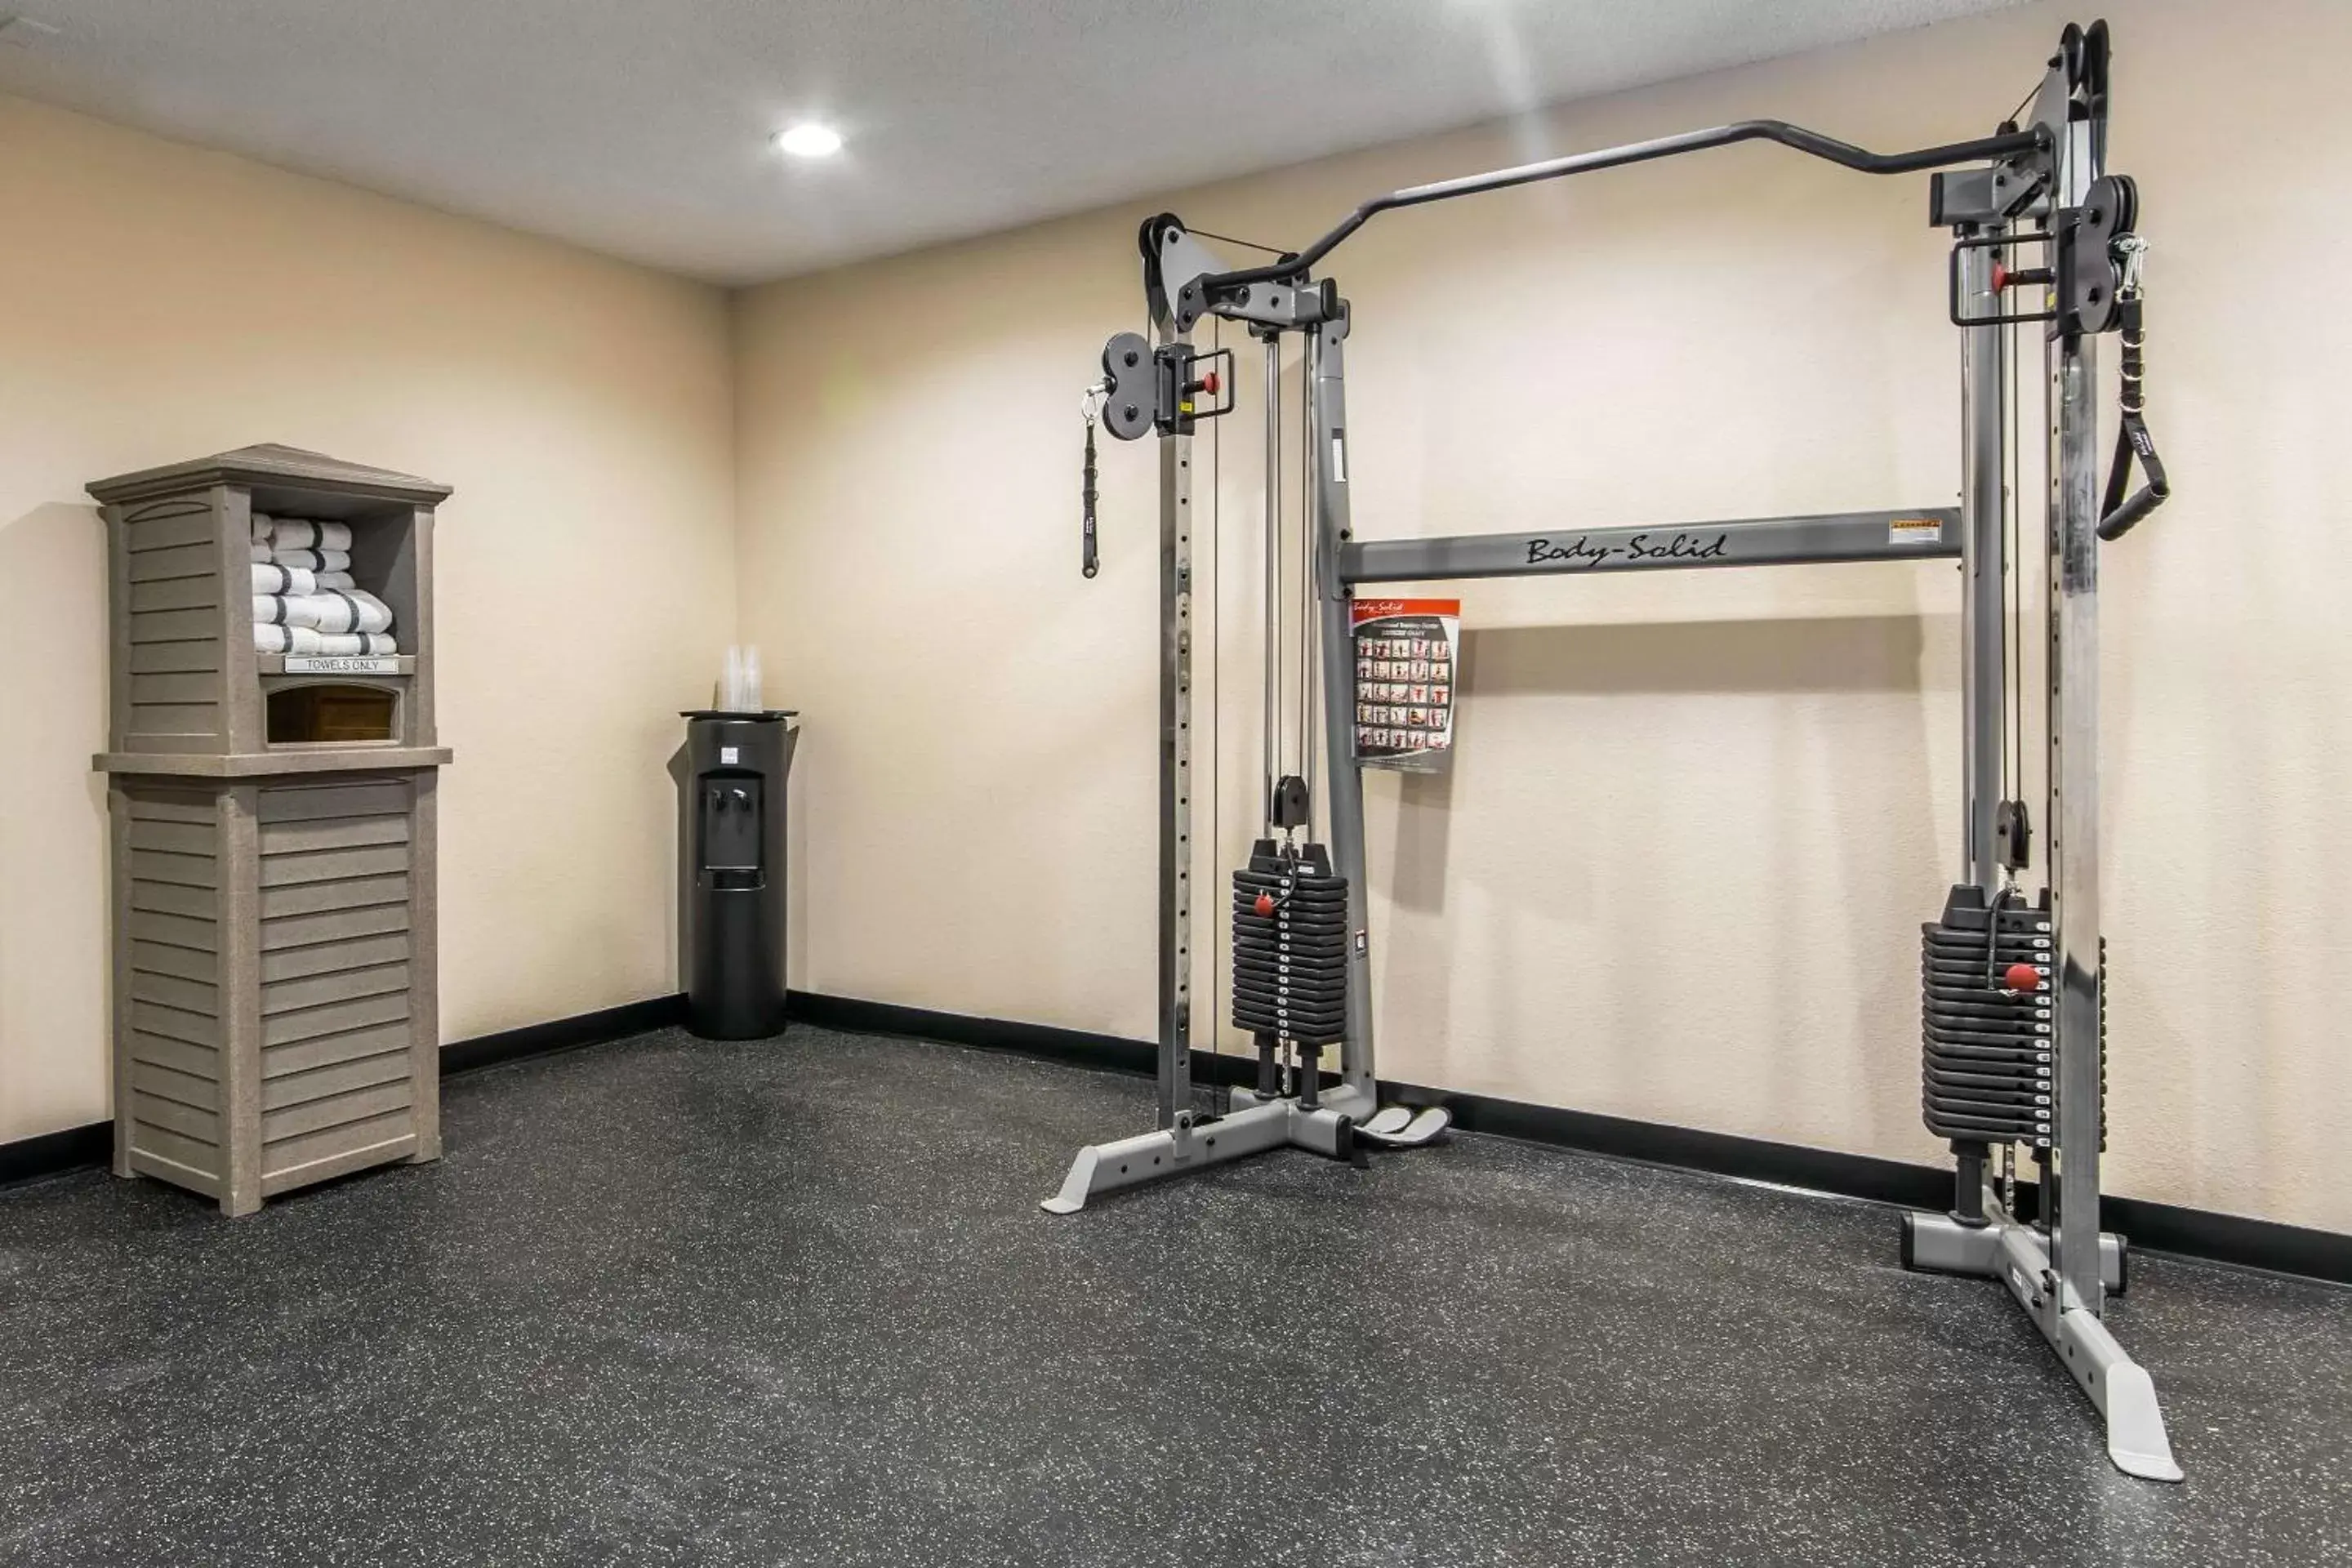 Fitness centre/facilities, Fitness Center/Facilities in Sleep Inn Lexington